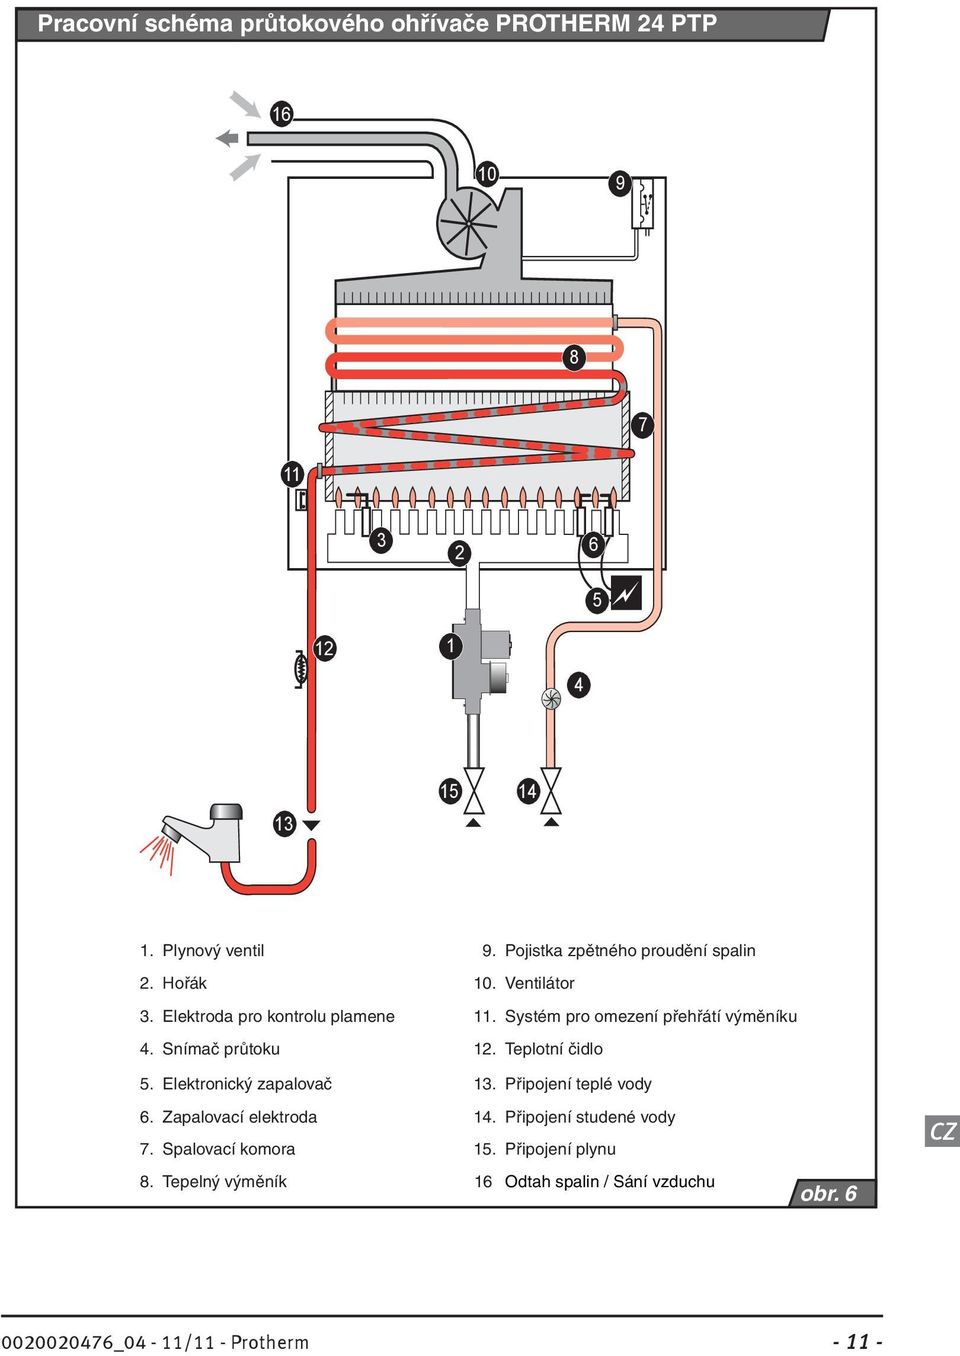 Návod k obsluze a instalaci průtokového ohřívače teplé vody 24 PTP - PDF  Free Download